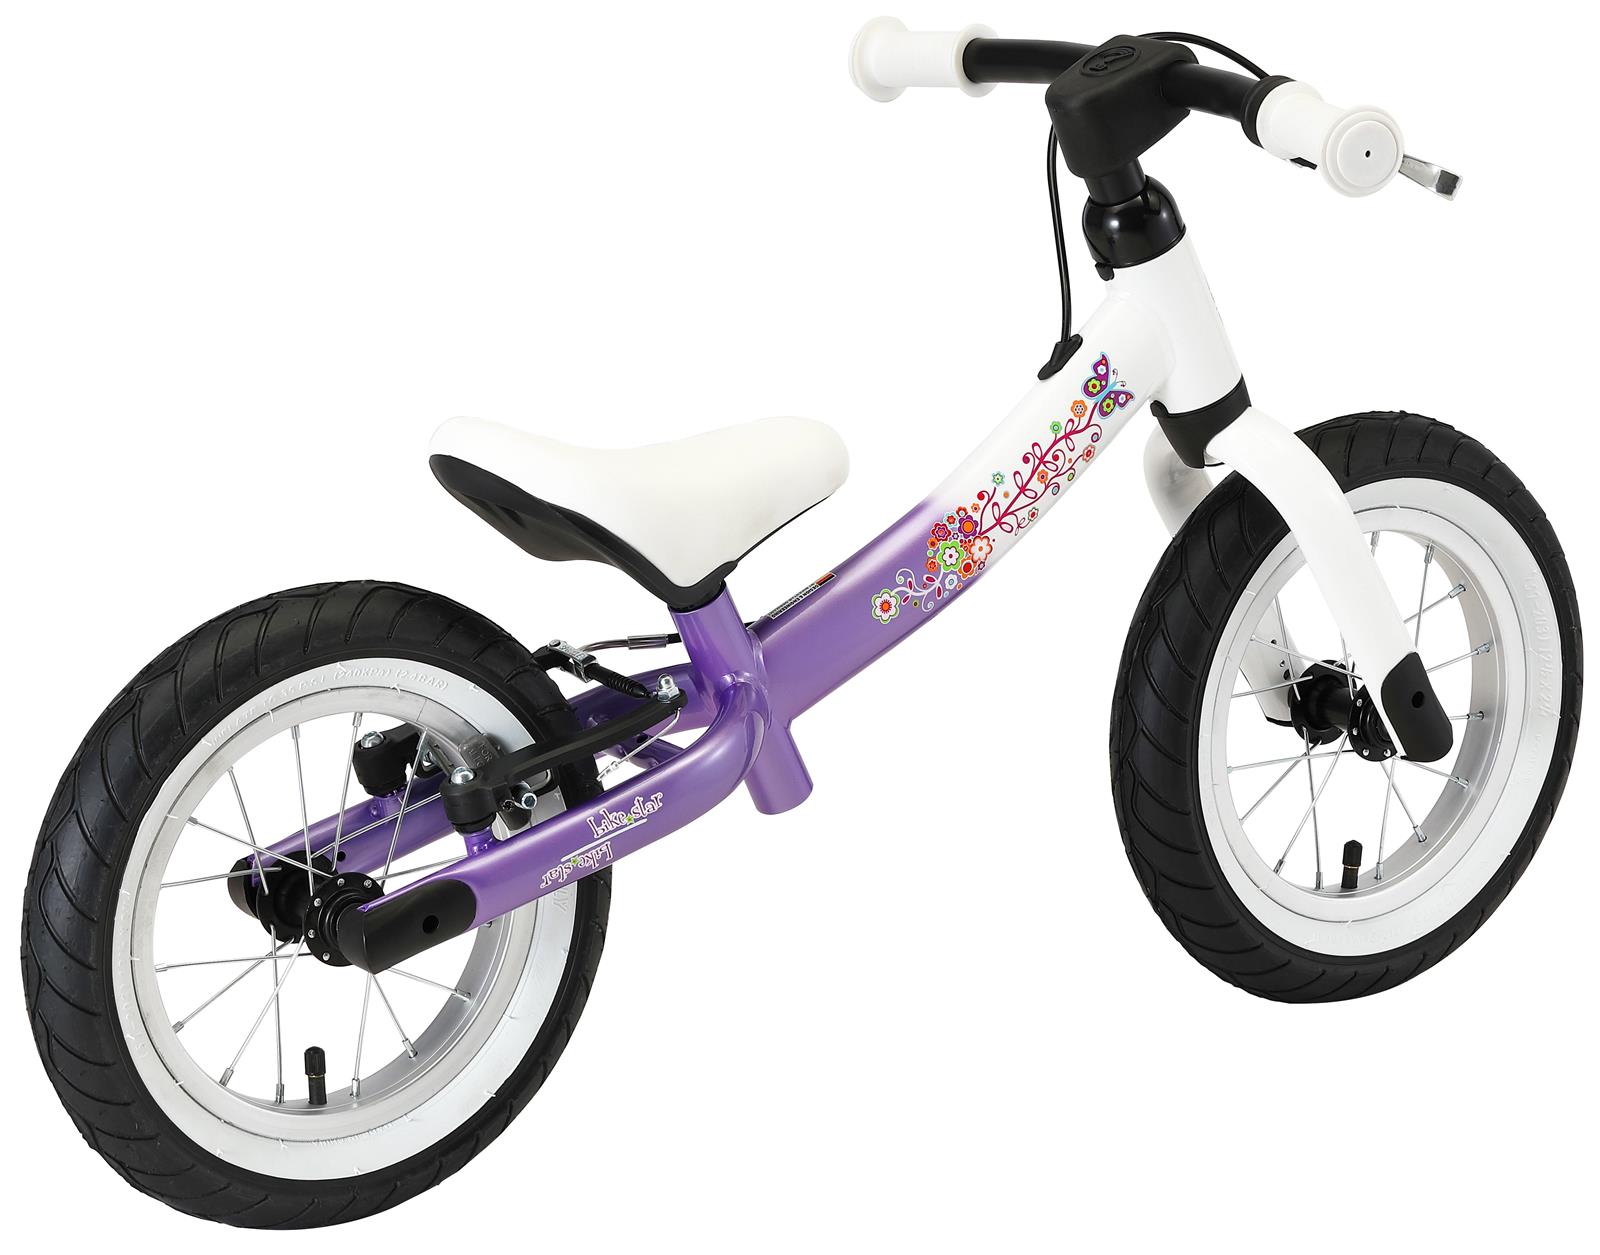 Kinder Laufrad Fahrrad Roadstar Kinderlaufrad 12 Zoll Weiß Violett 